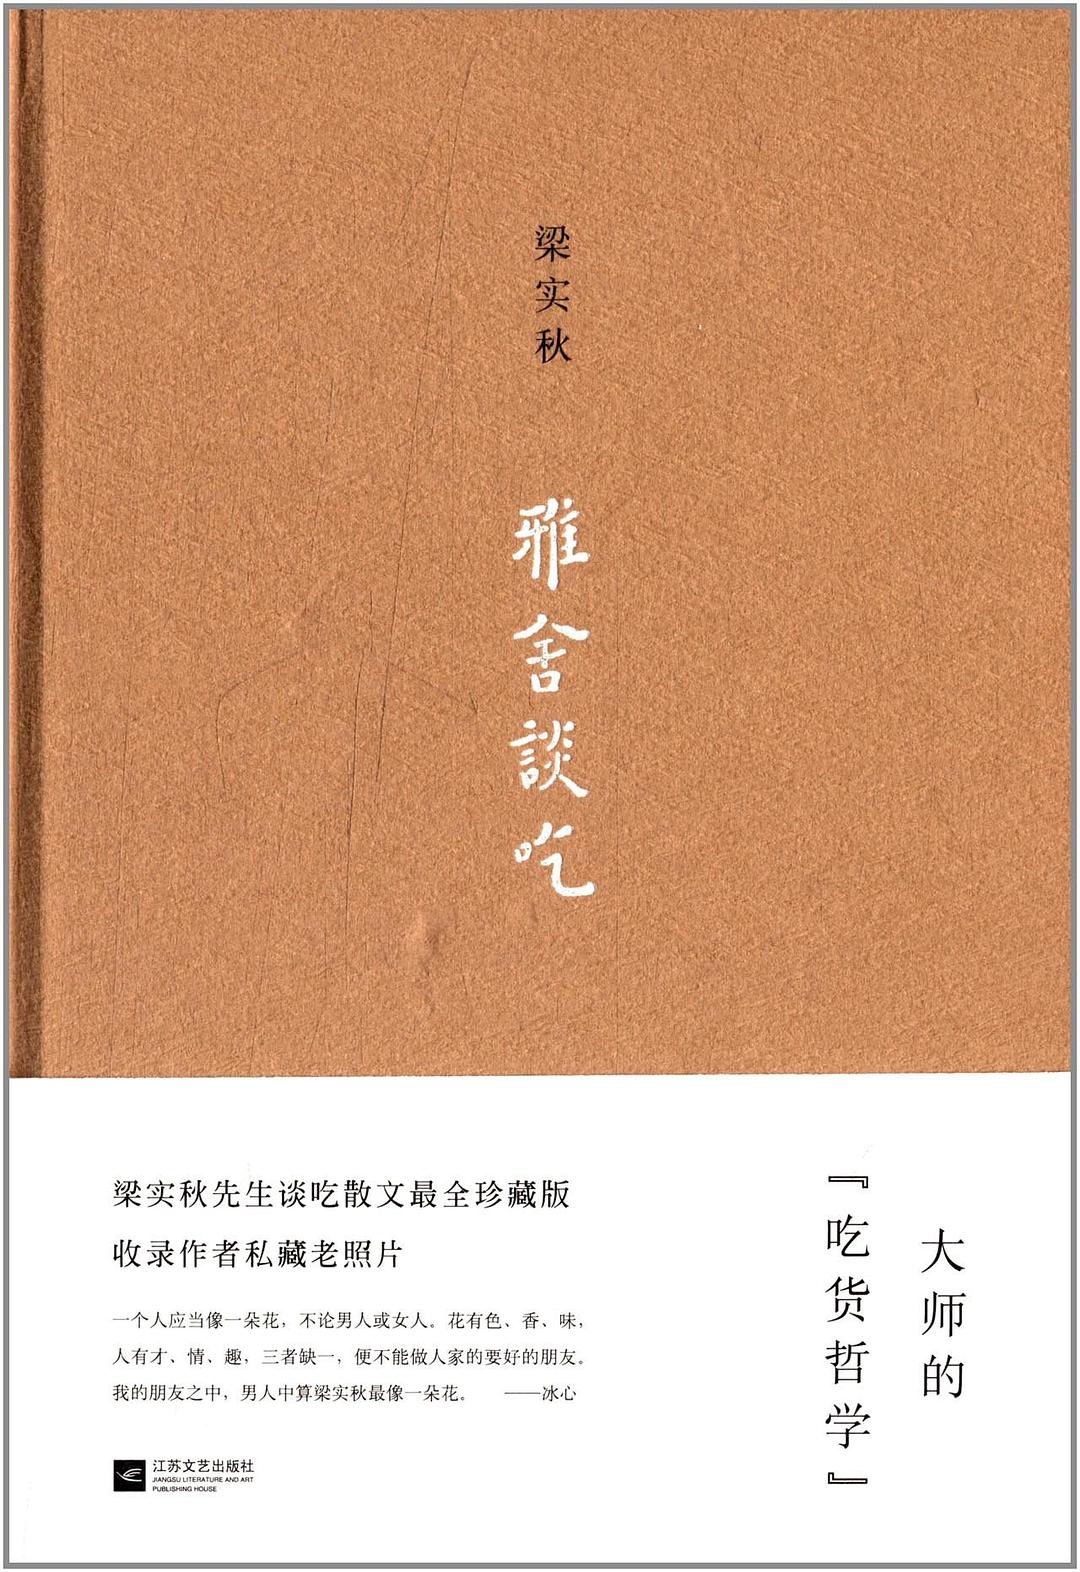 雅舍談吃(2013年江蘇文藝出版社出版圖書)